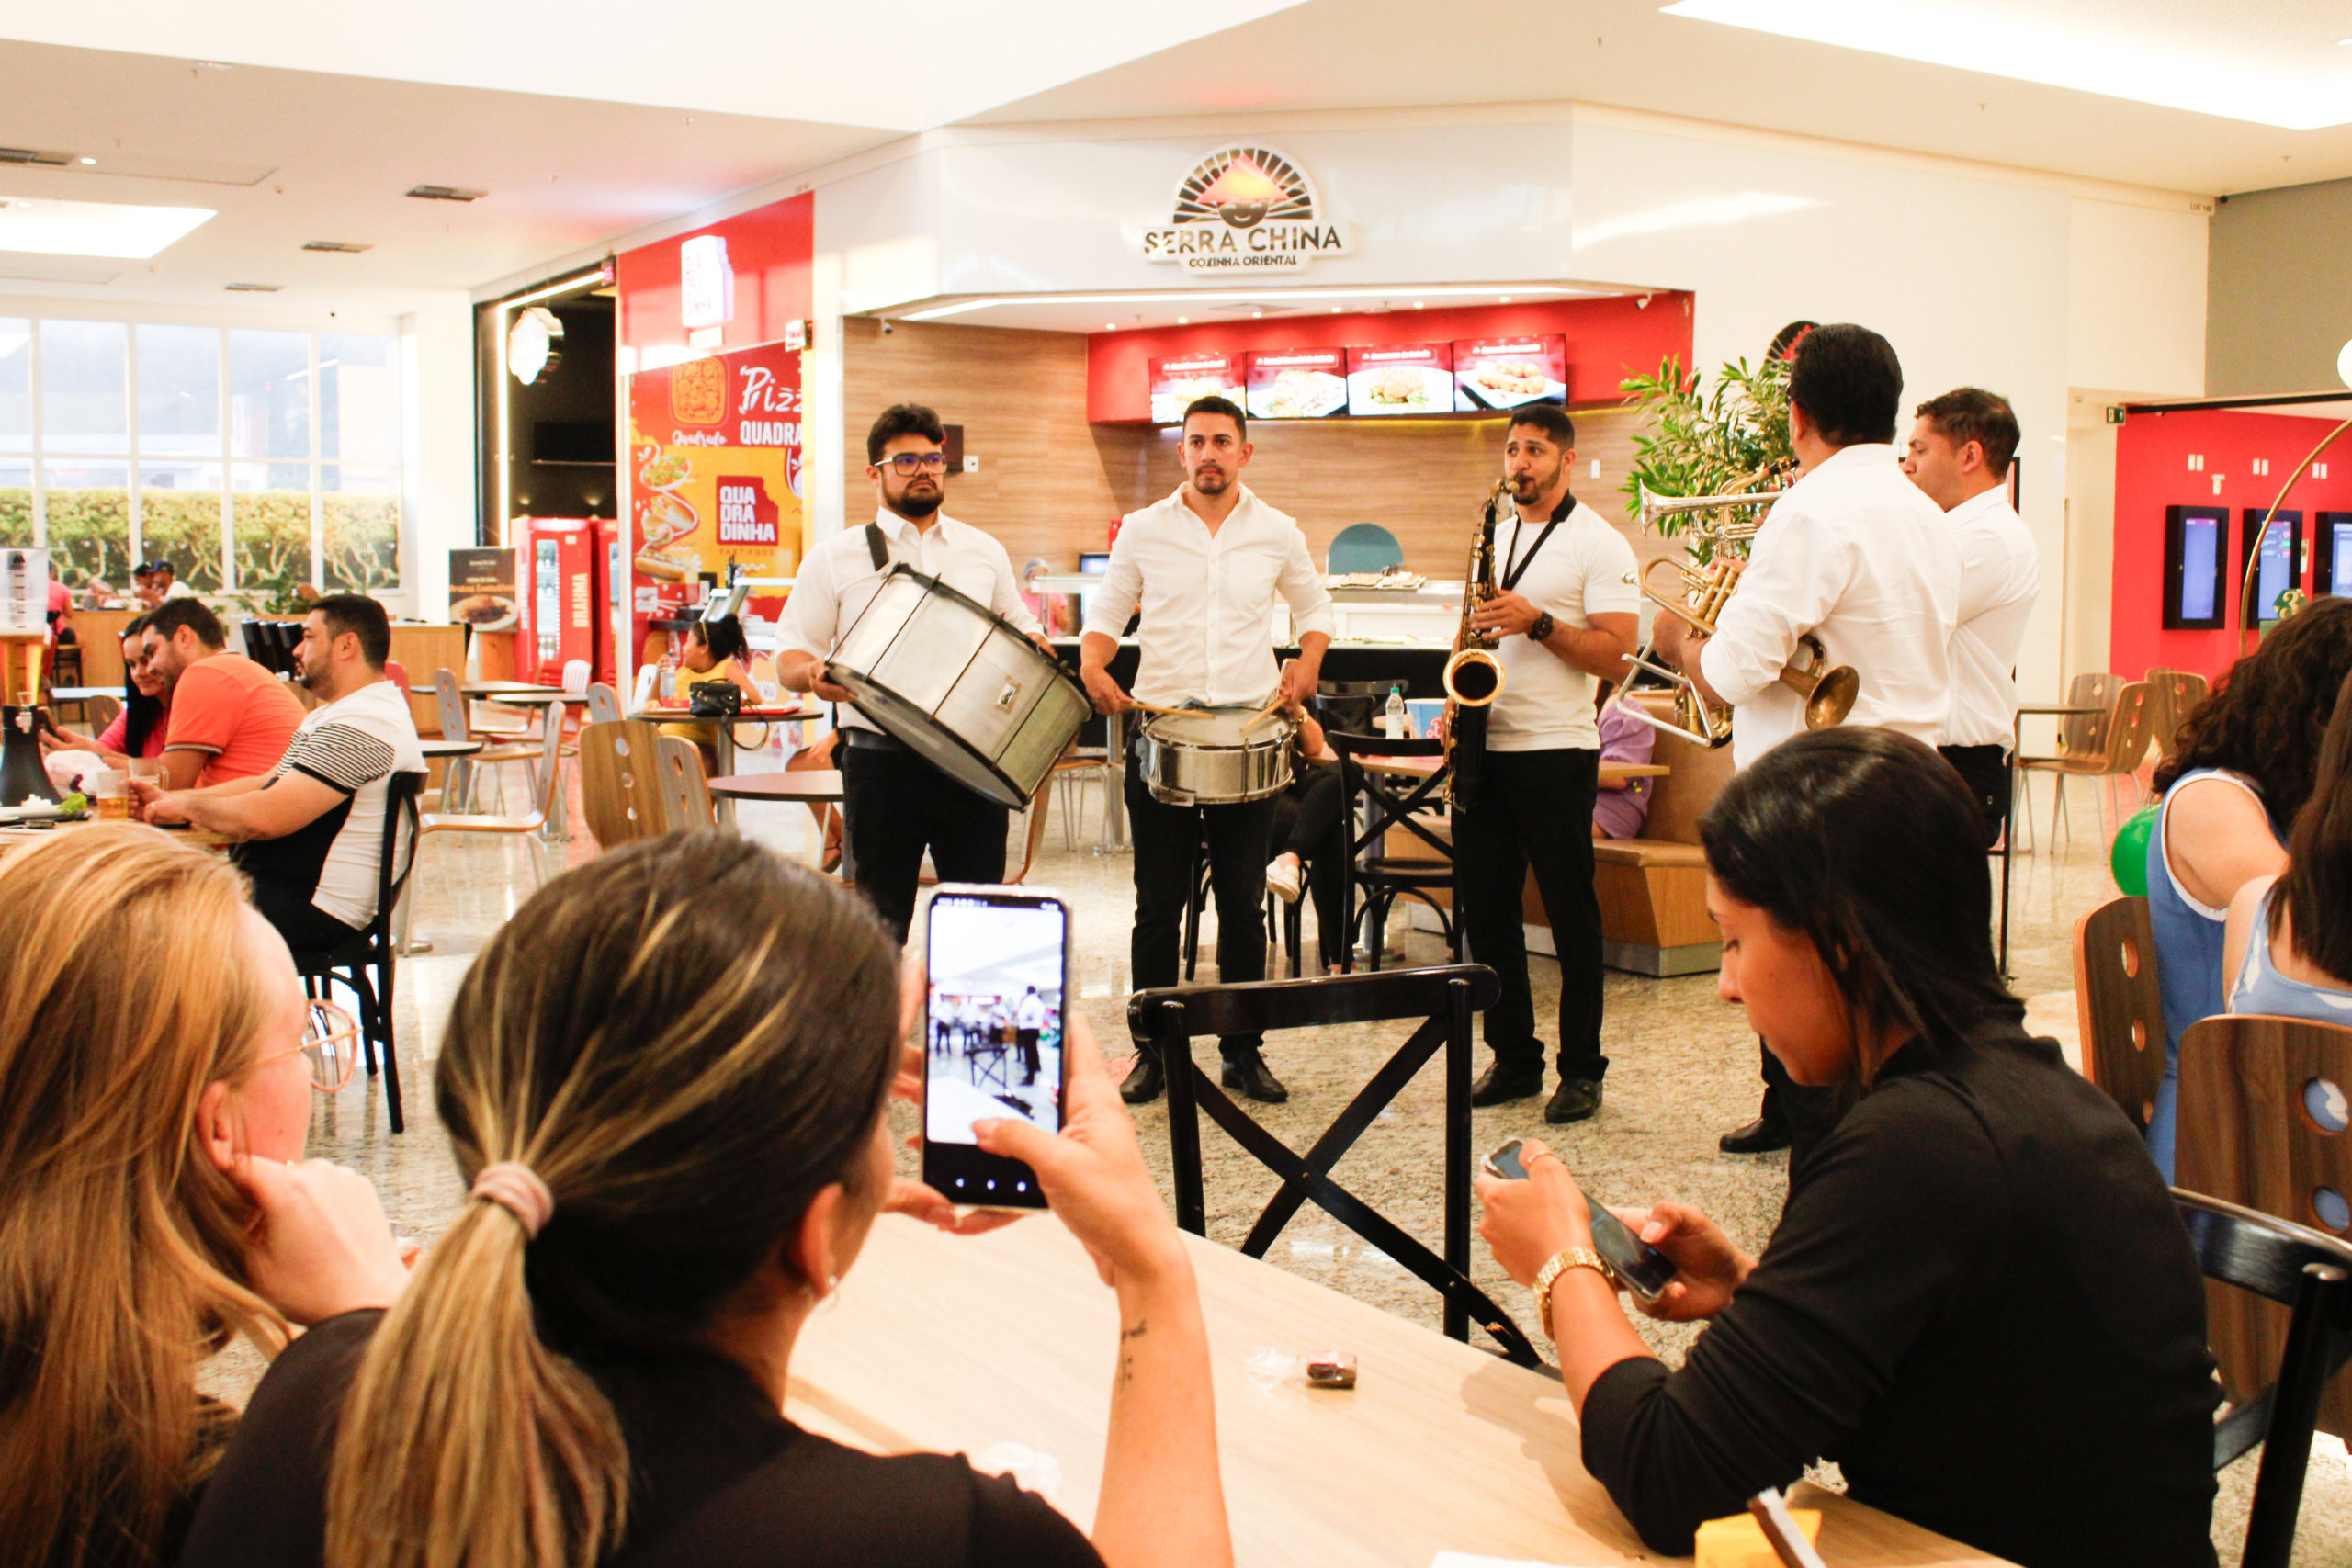 Shopping Serra Talhada celebra três anos com programação especial